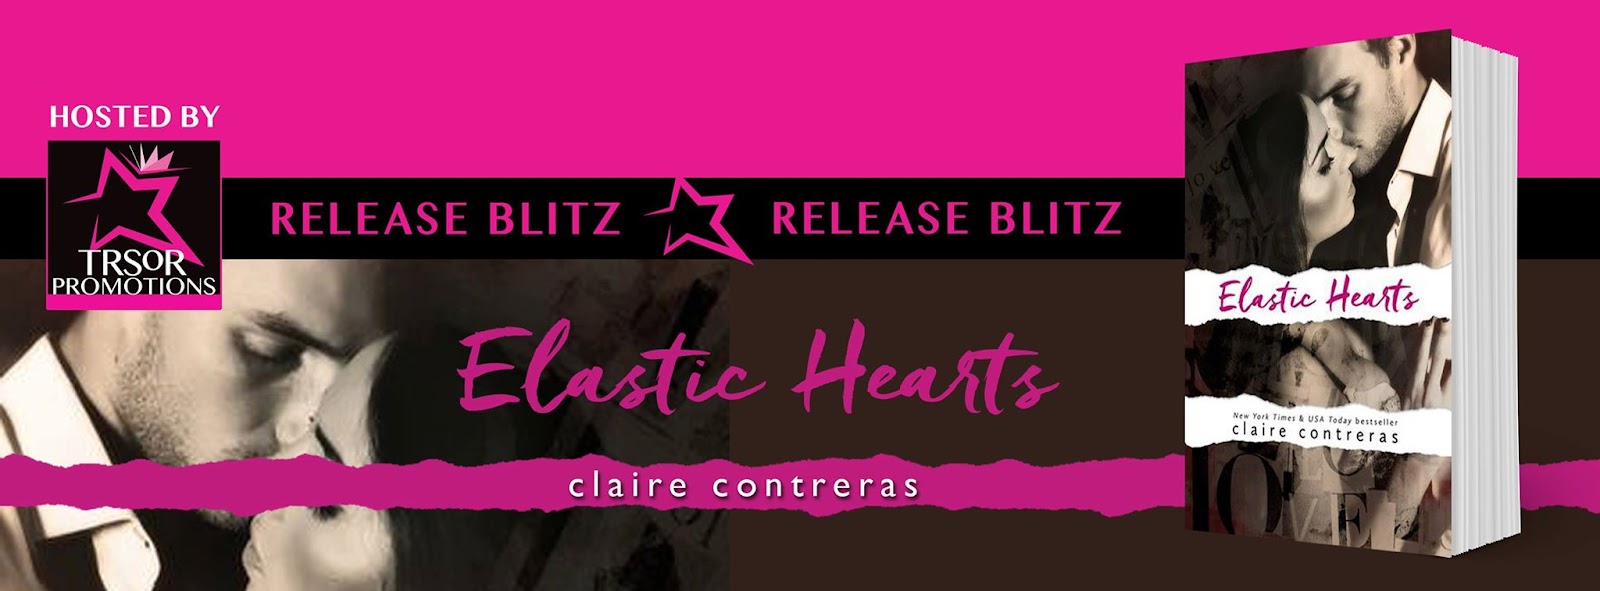 elastic hearts release bliitz.jpg